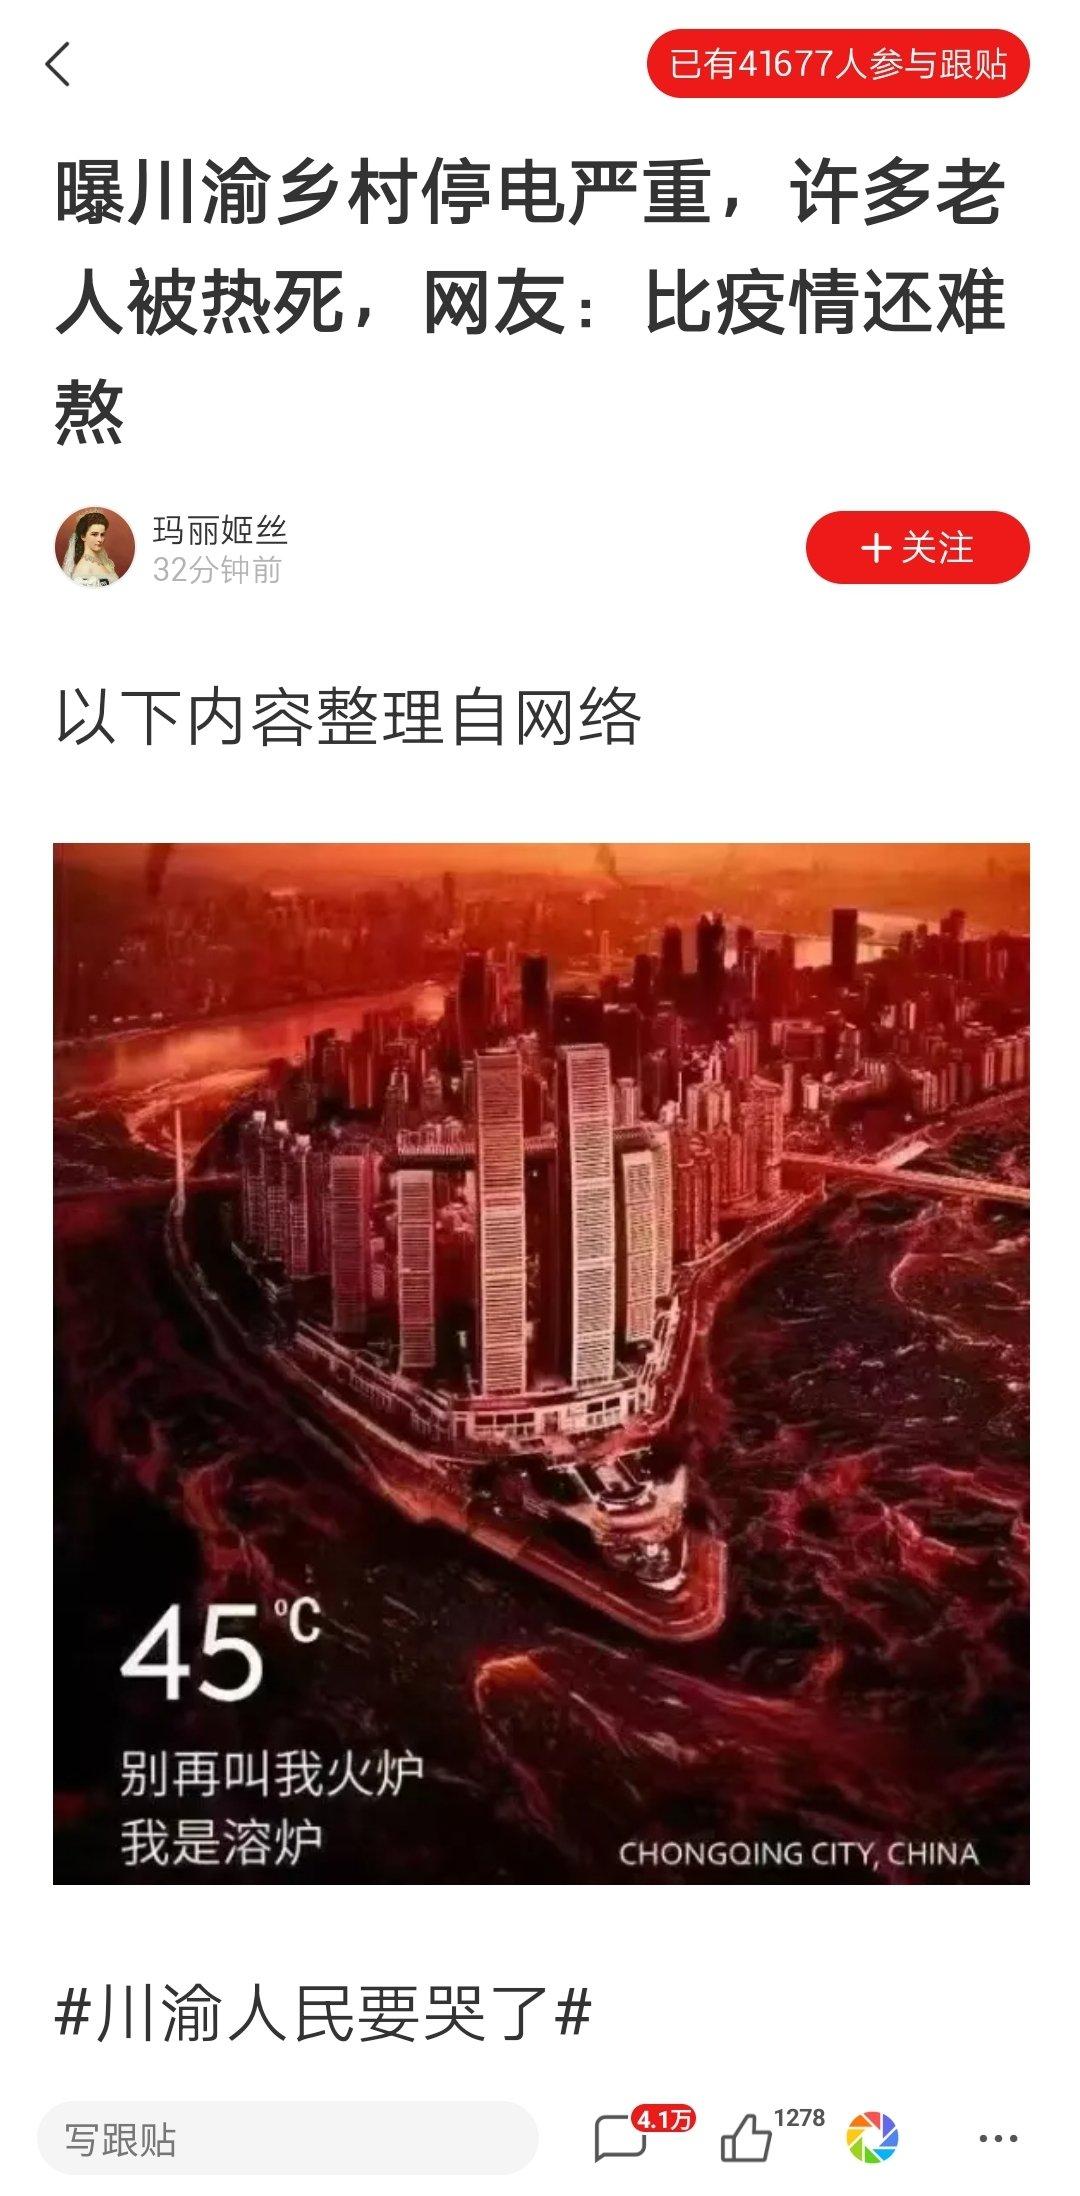 重庆一下午140人被热死，网民热议“渡劫模式”透露重大信息官方开始打压